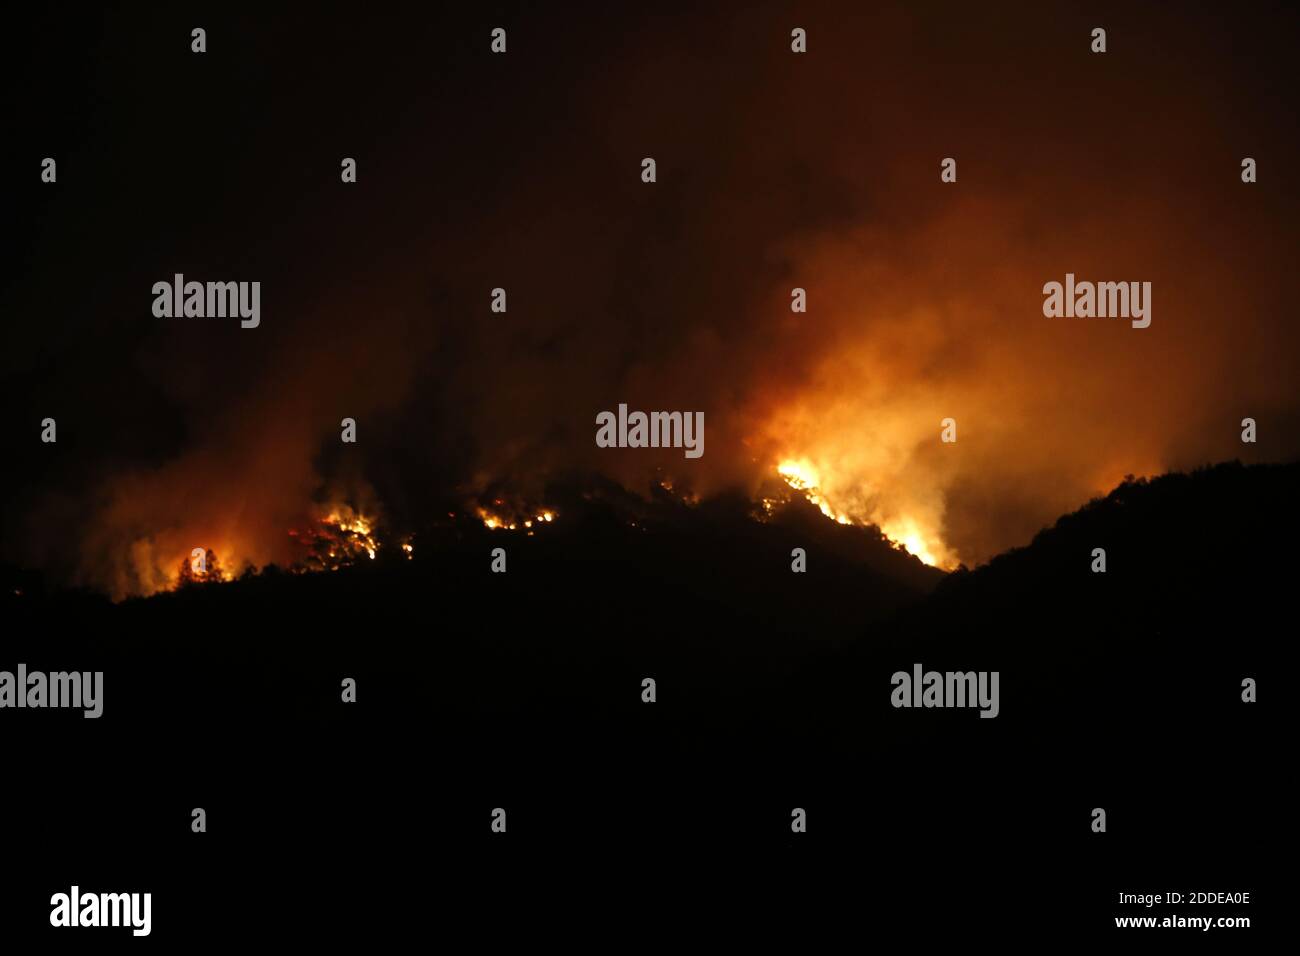 PAS DE FILM, PAS DE VIDÉO, PAS de TV, PAS DE DOCUMENTAIRE - incendie brûle dans les collines au-dessus de Kenwood, CA, USA, tard le mardi 10 octobre 2017. Photo de Karl Mondon/Bay Area News Group/TNS/ABACAPRESS.COM Banque D'Images